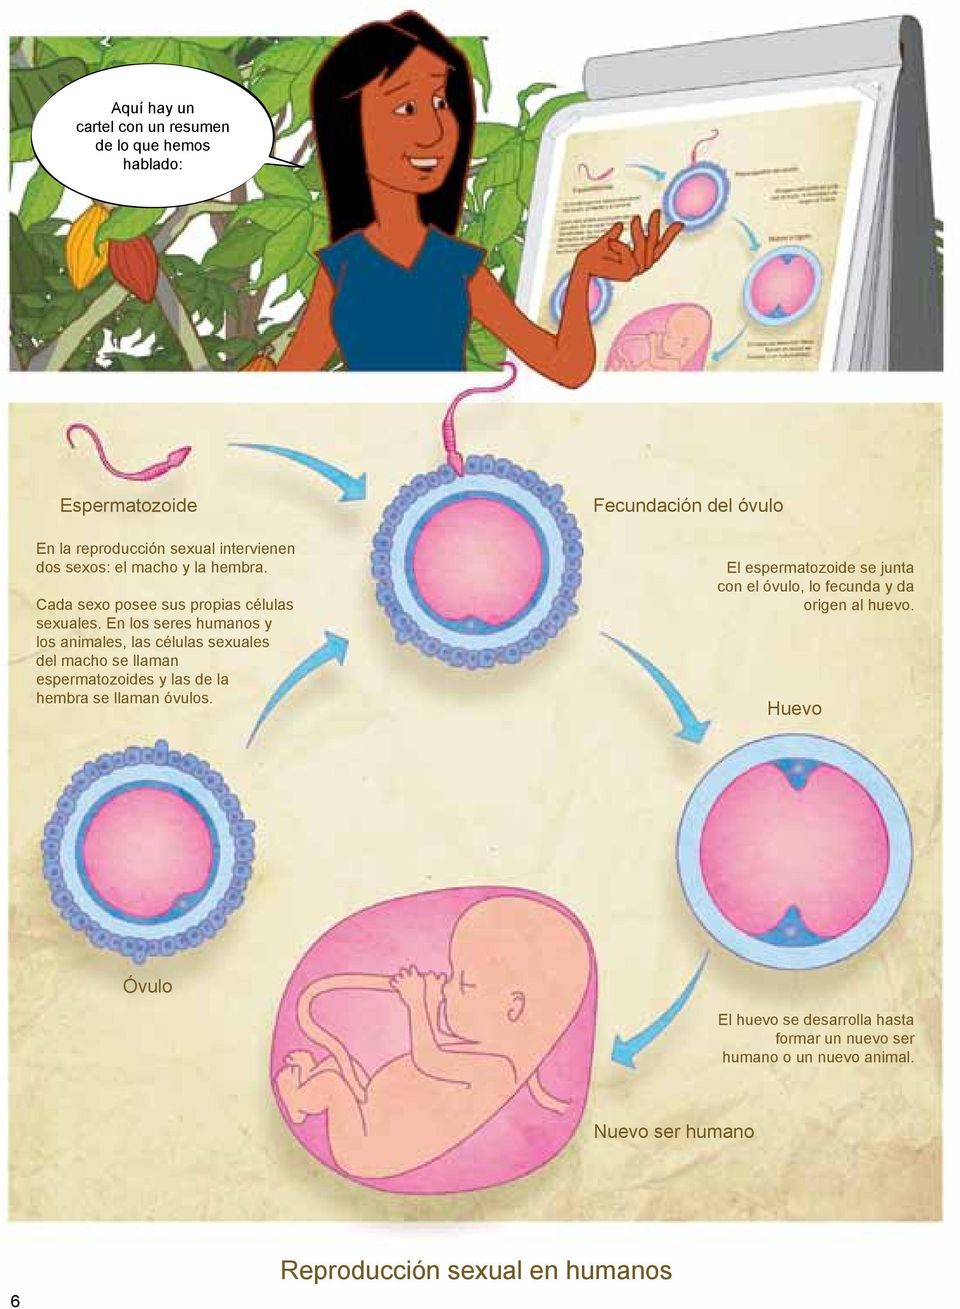 En los seres humanos y los animales, las células sexuales del macho se llaman espermatozoides y las de la hembra se llaman óvulos.